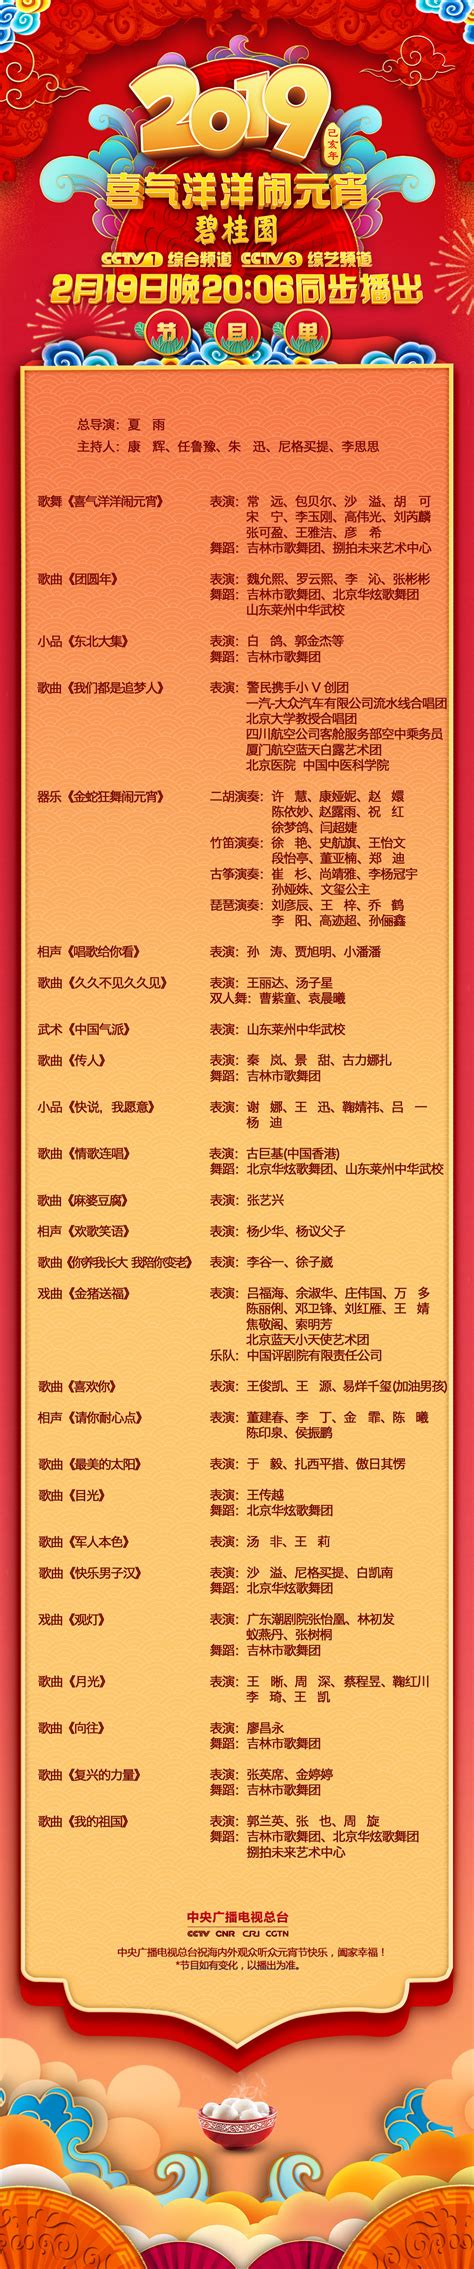 北京电视台节目单